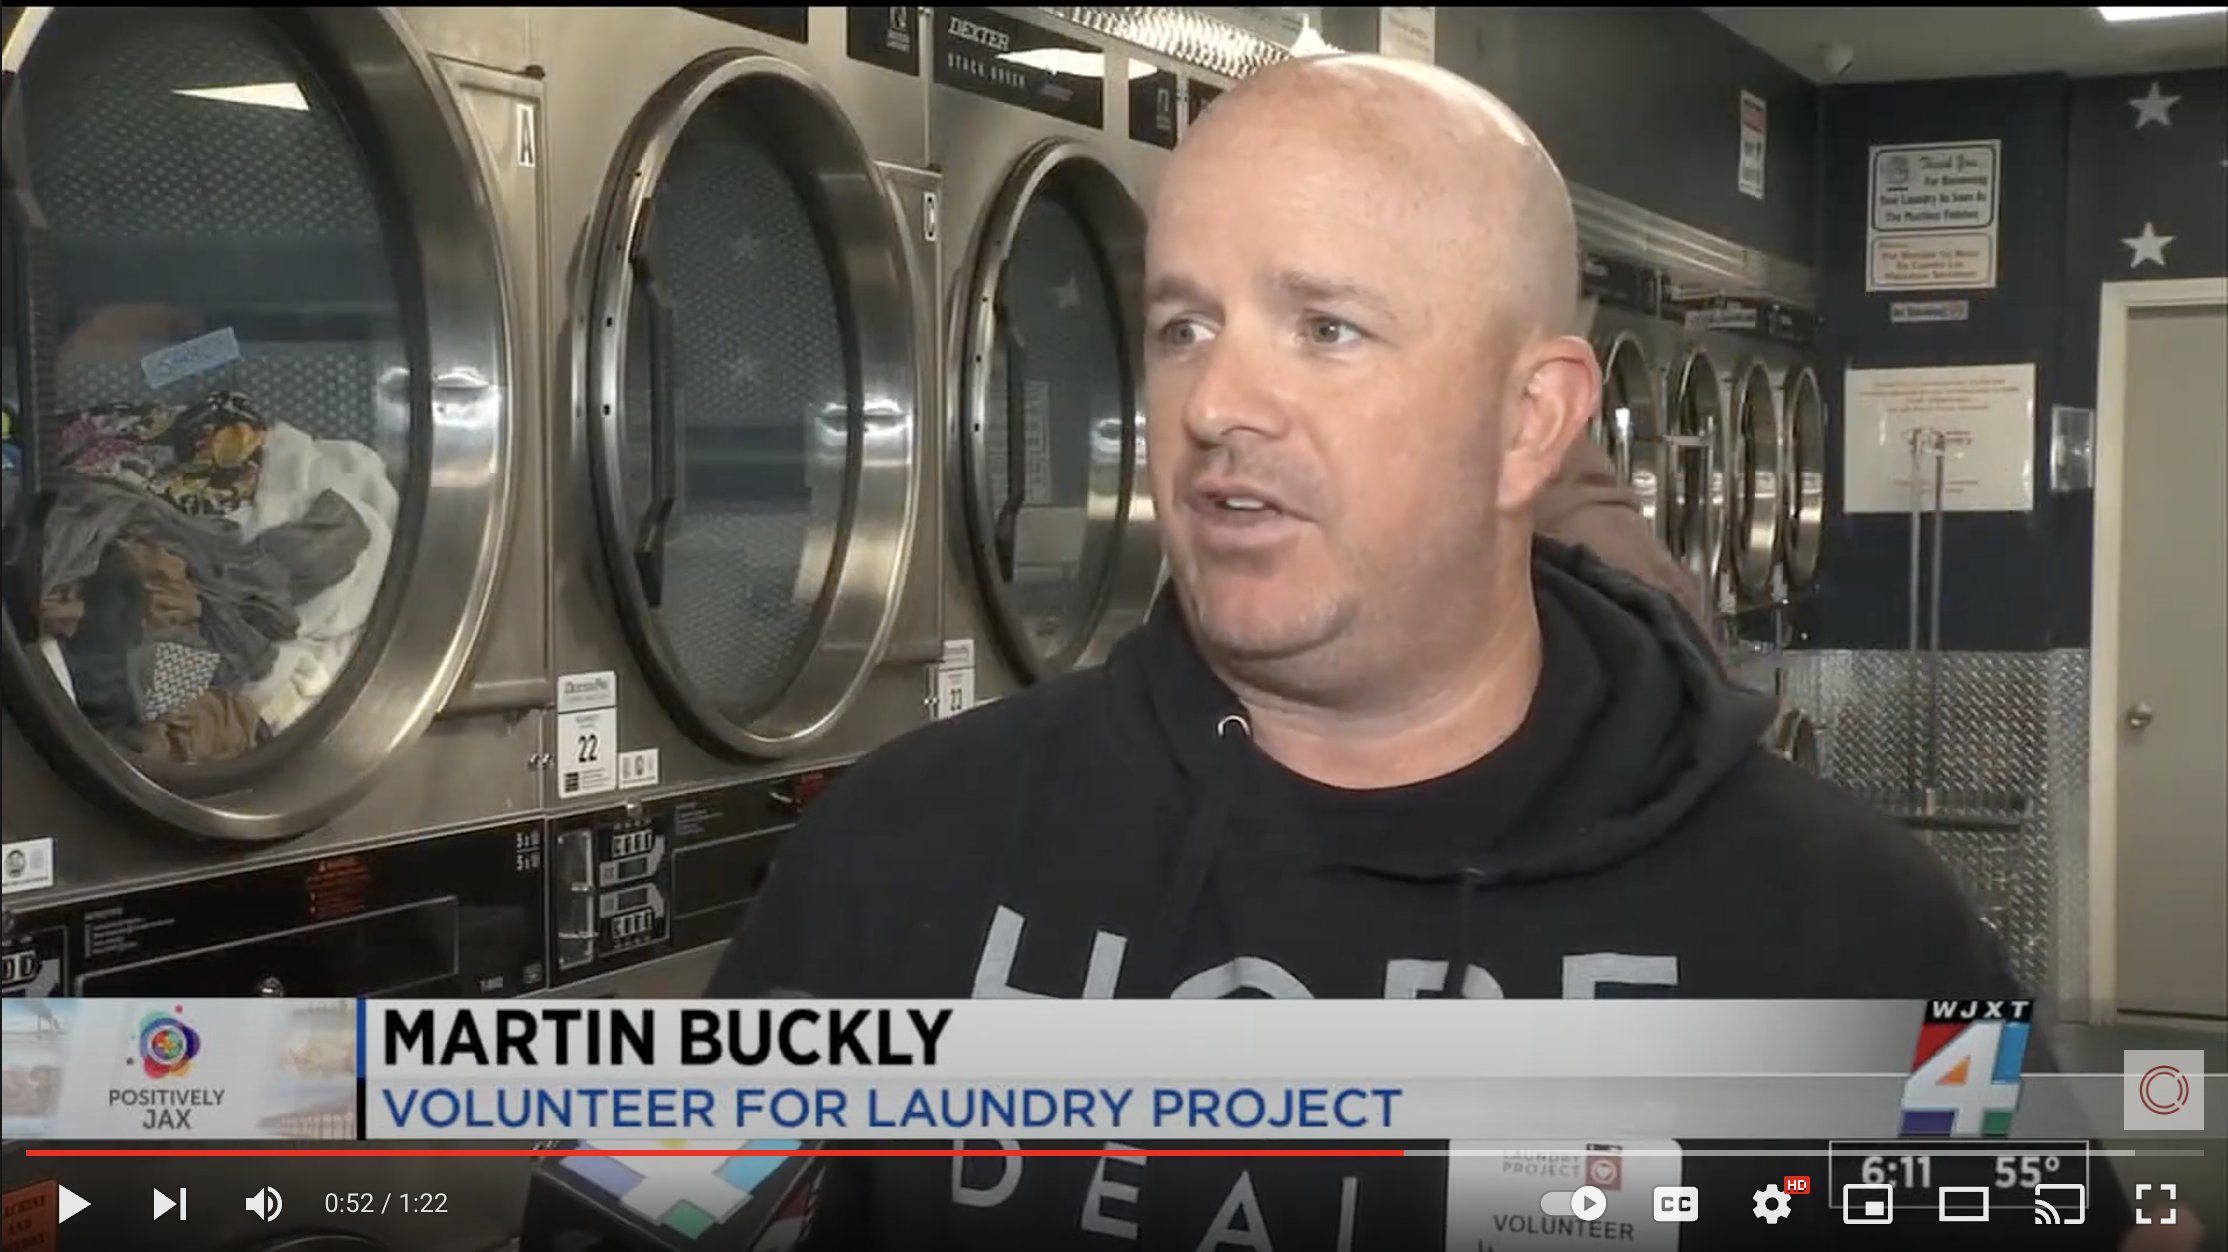 News 4 Jax – Laundry Project